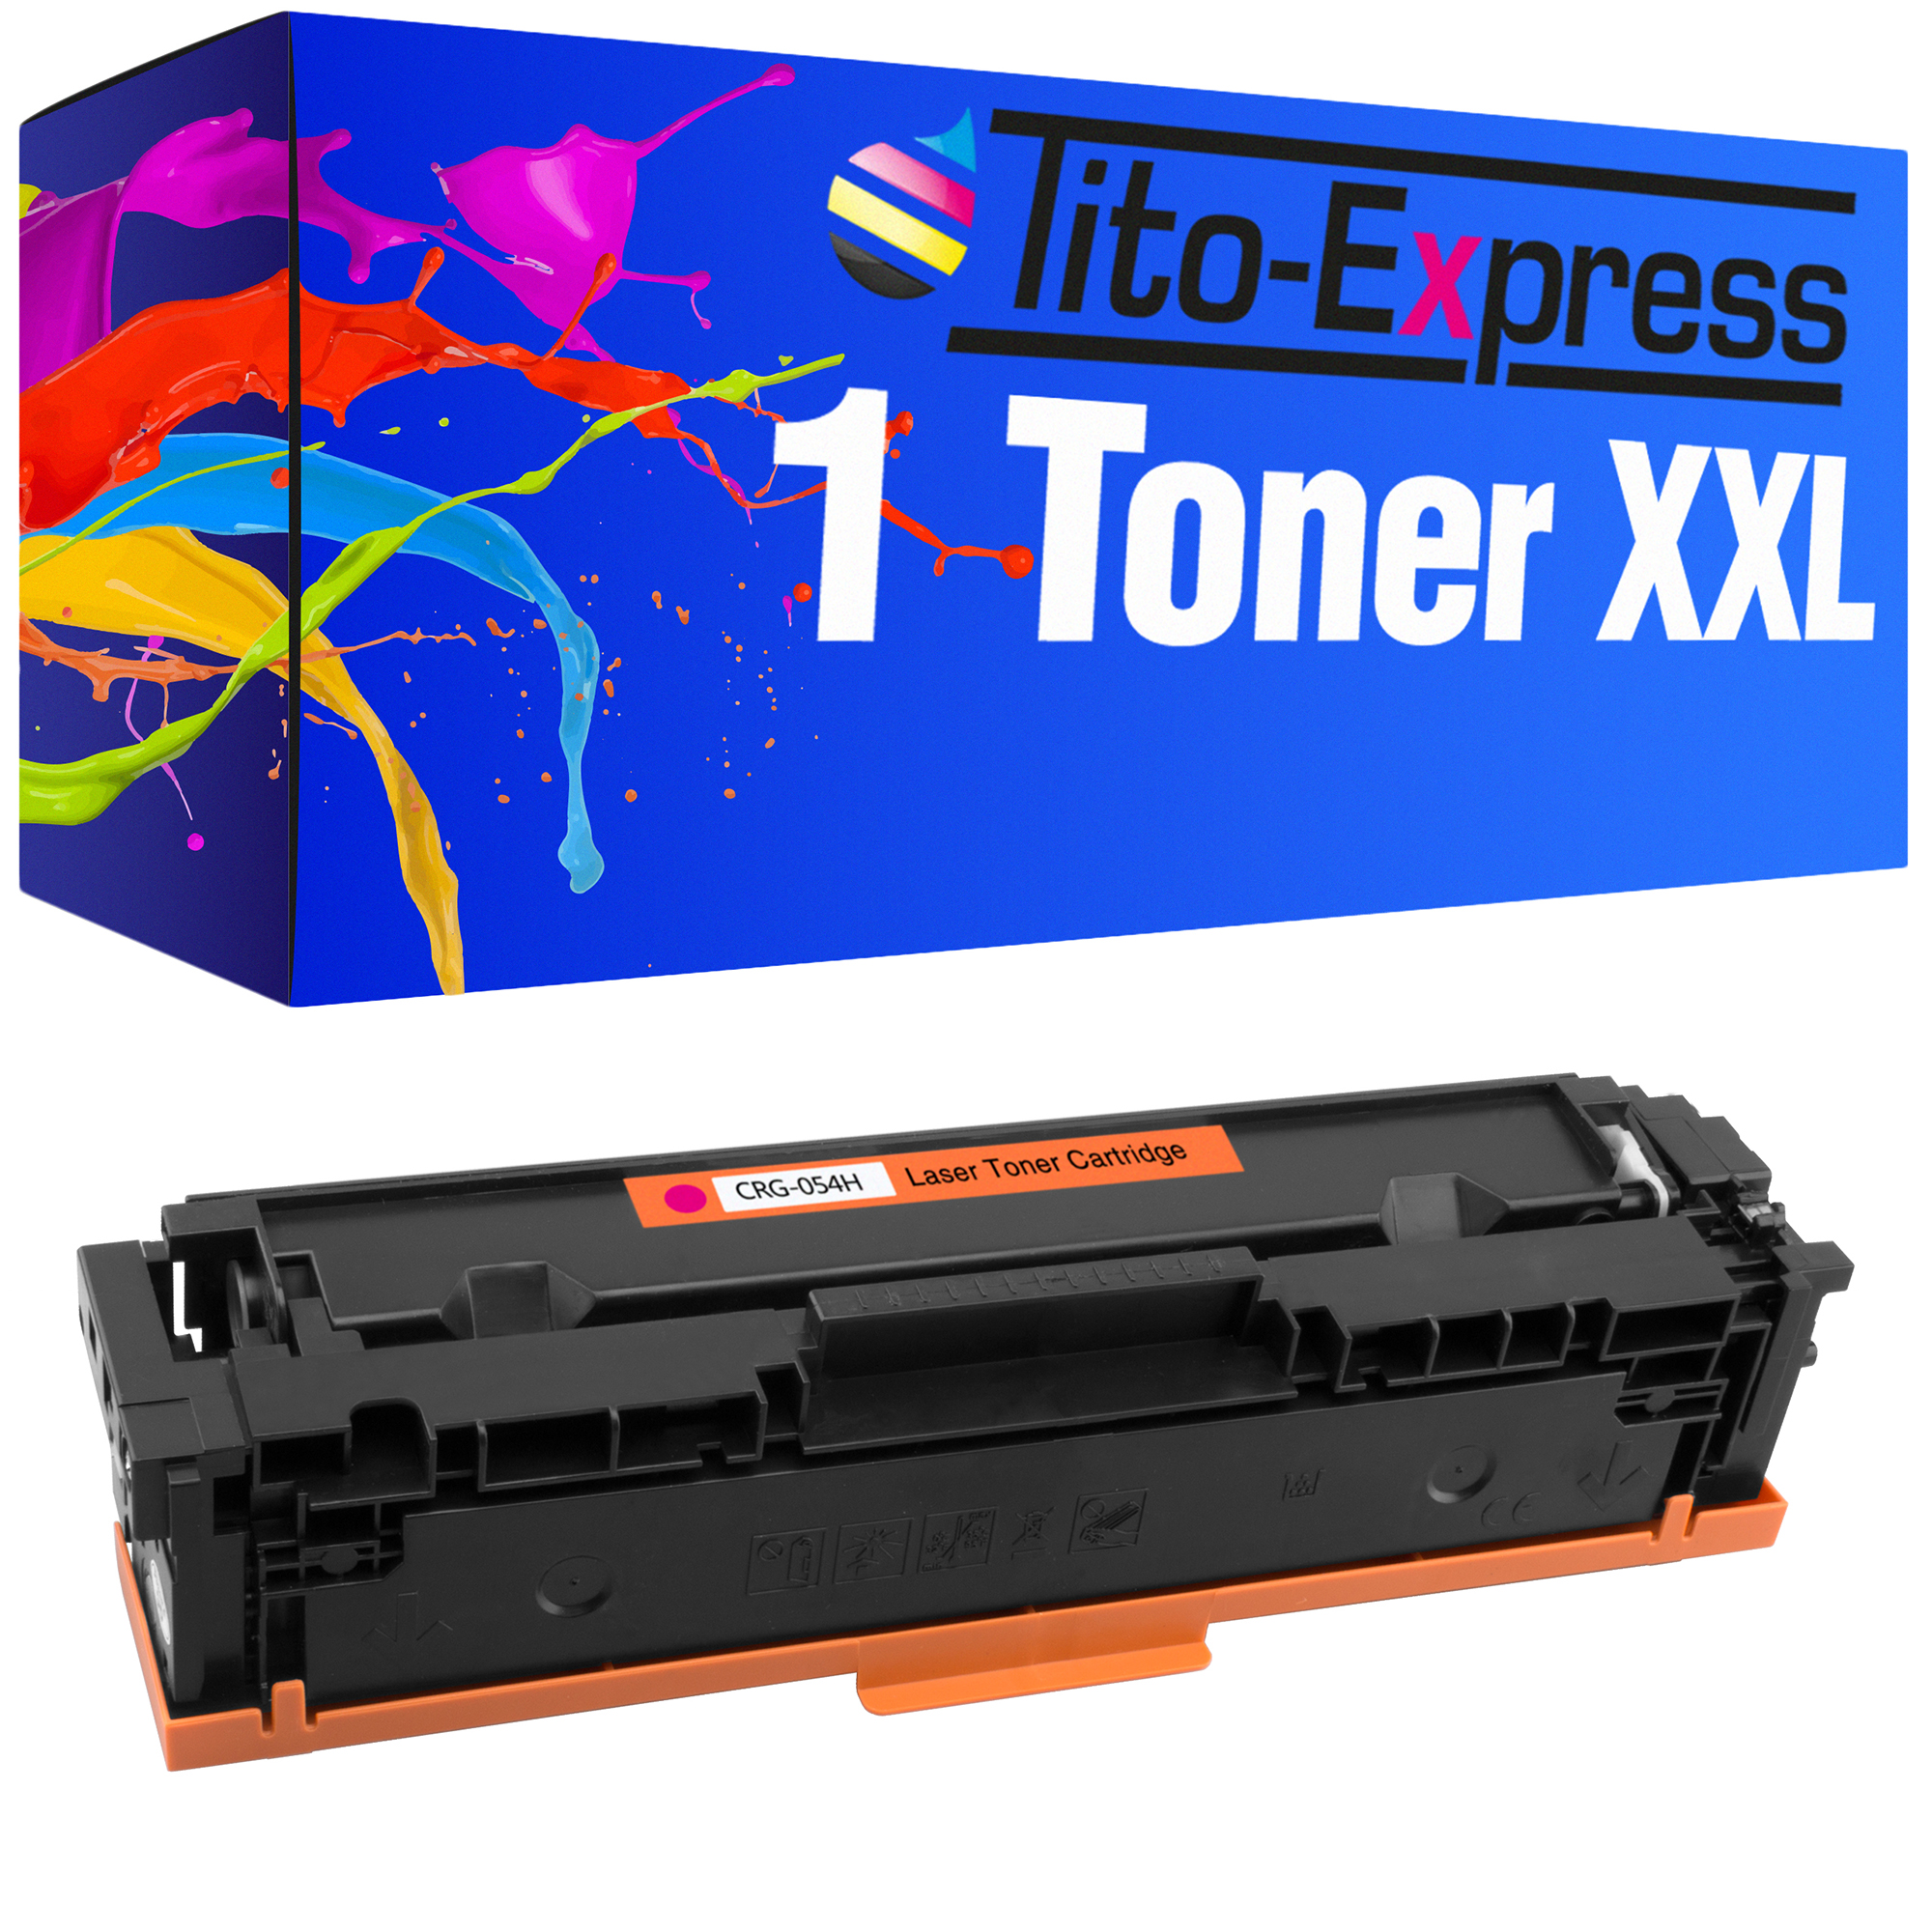 TITO-EXPRESS PLATINUMSERIE (3026C002) Toner magenta Canon 1 ersetzt CRG-054H Toner